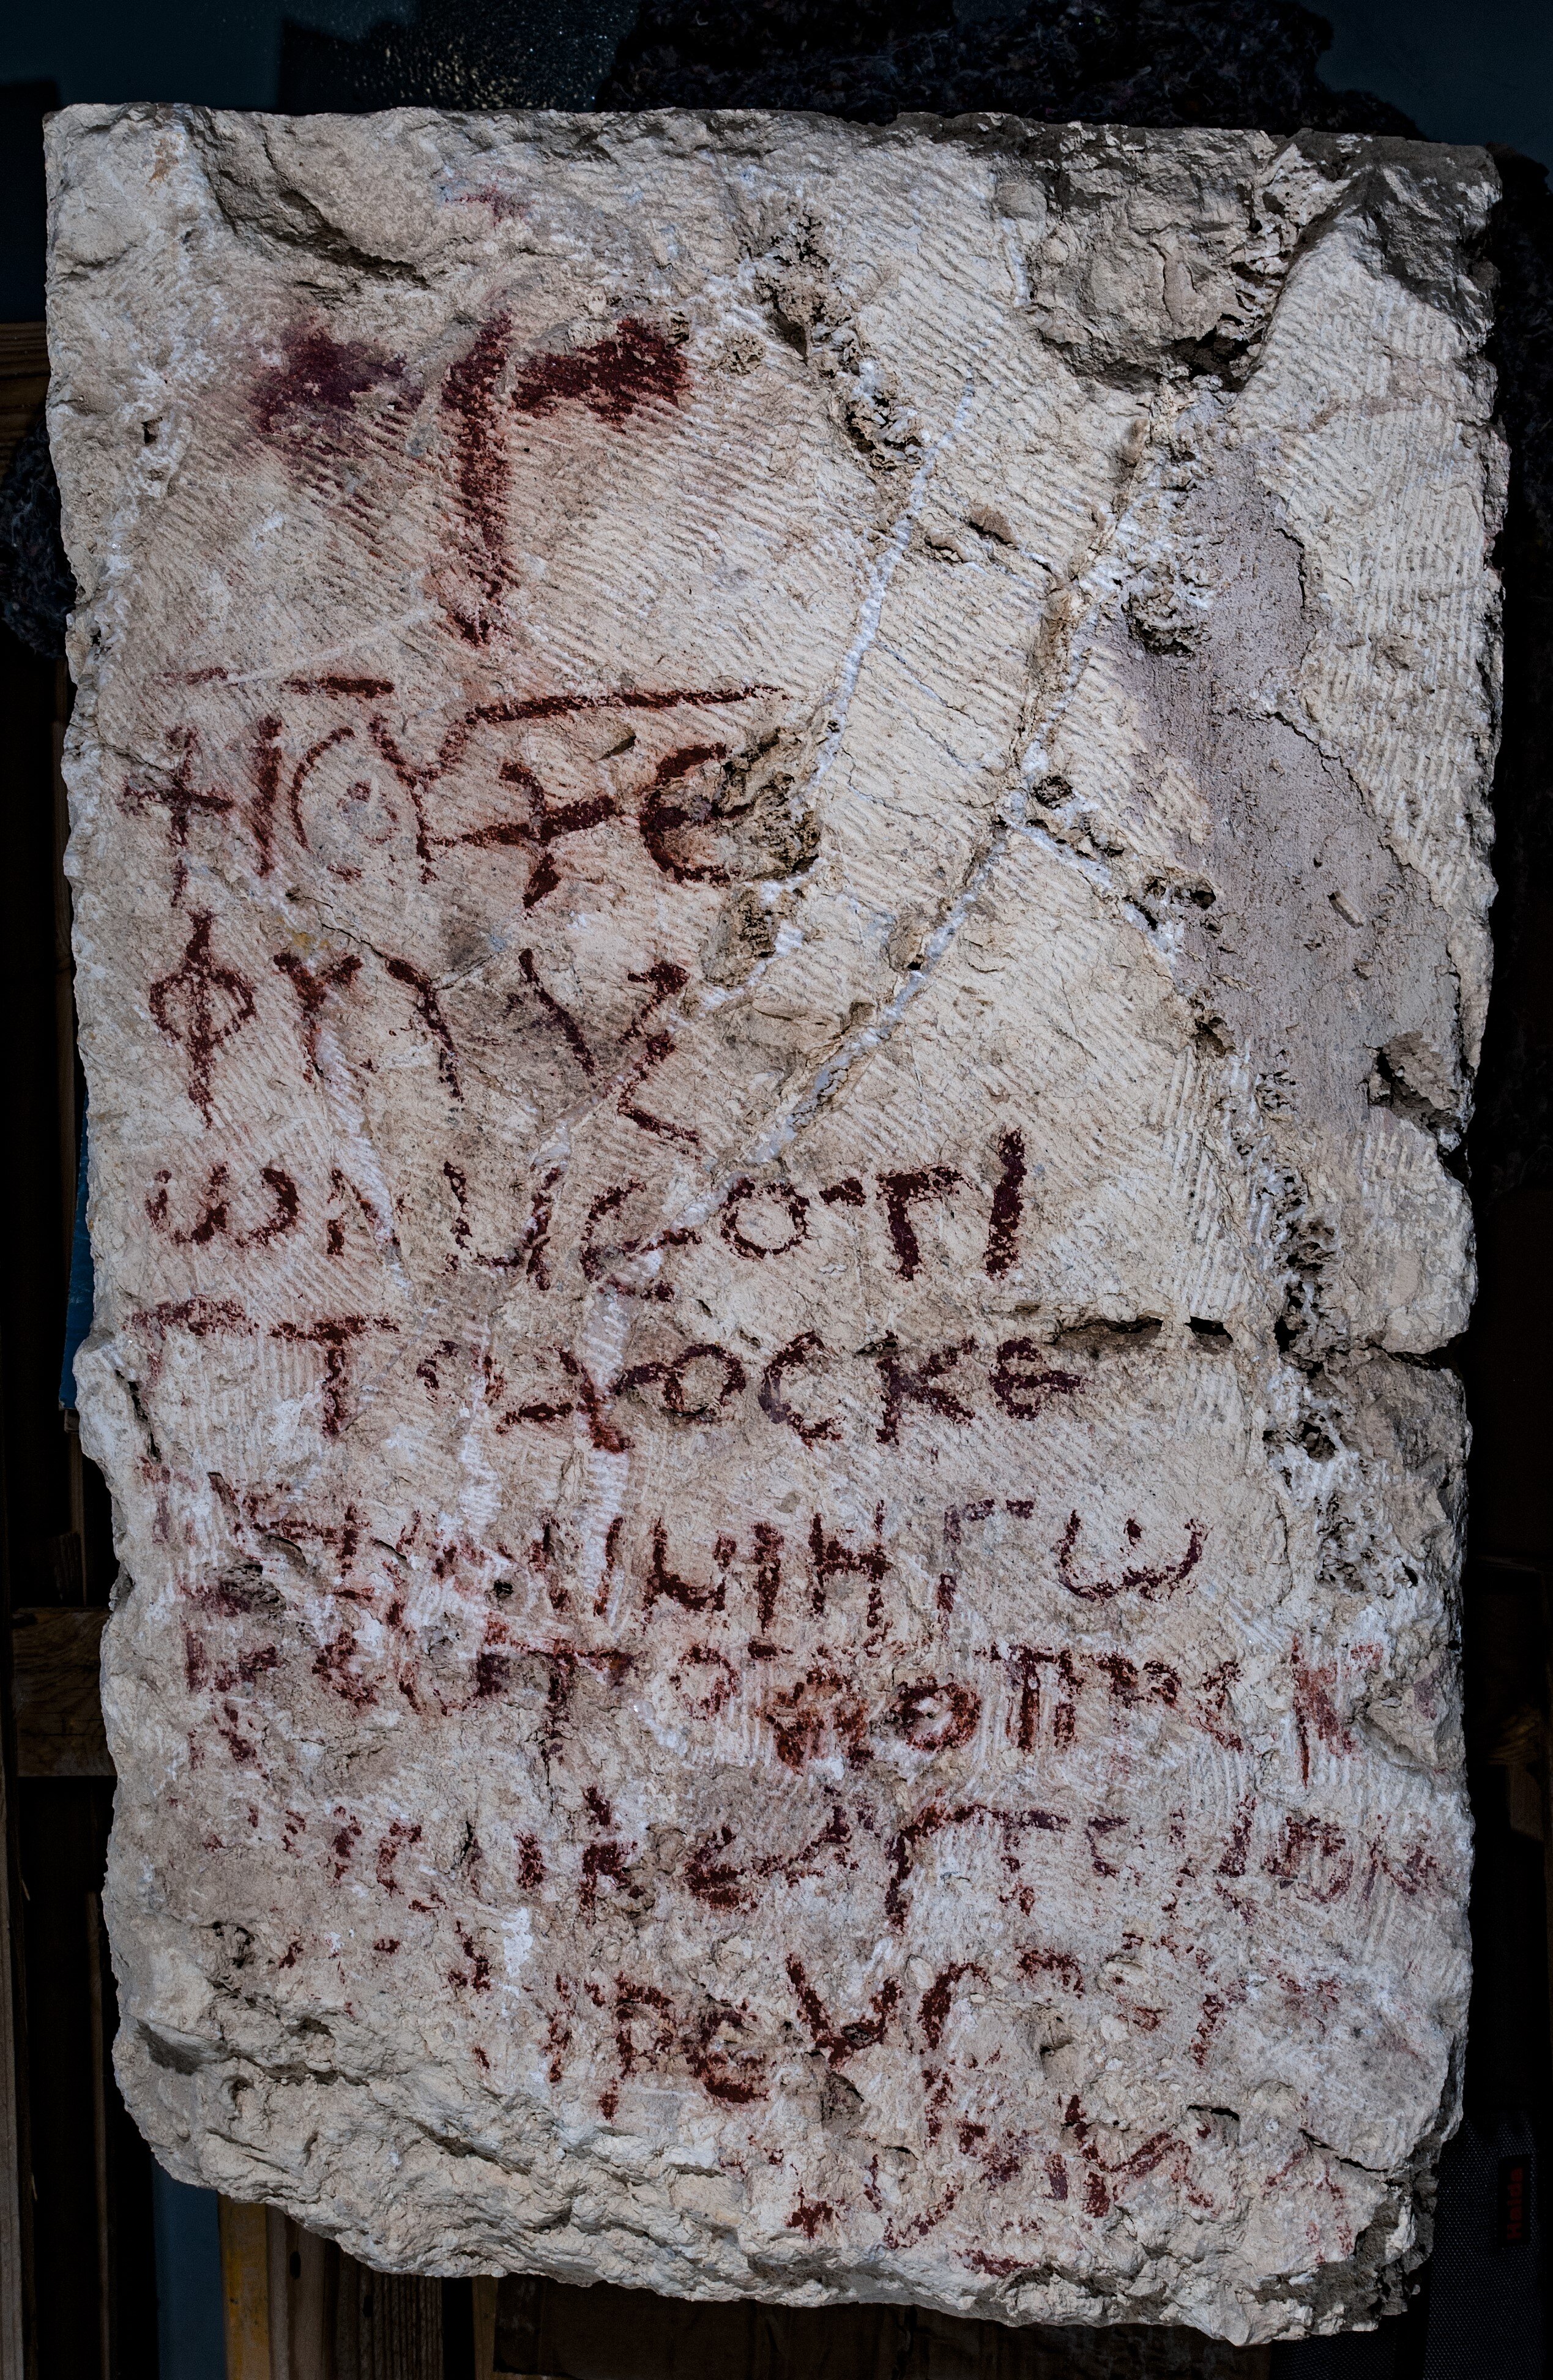 Inscrição grega bizantina do Salmo 86 encontrada na Hircânia: desenterrando a fé antiga